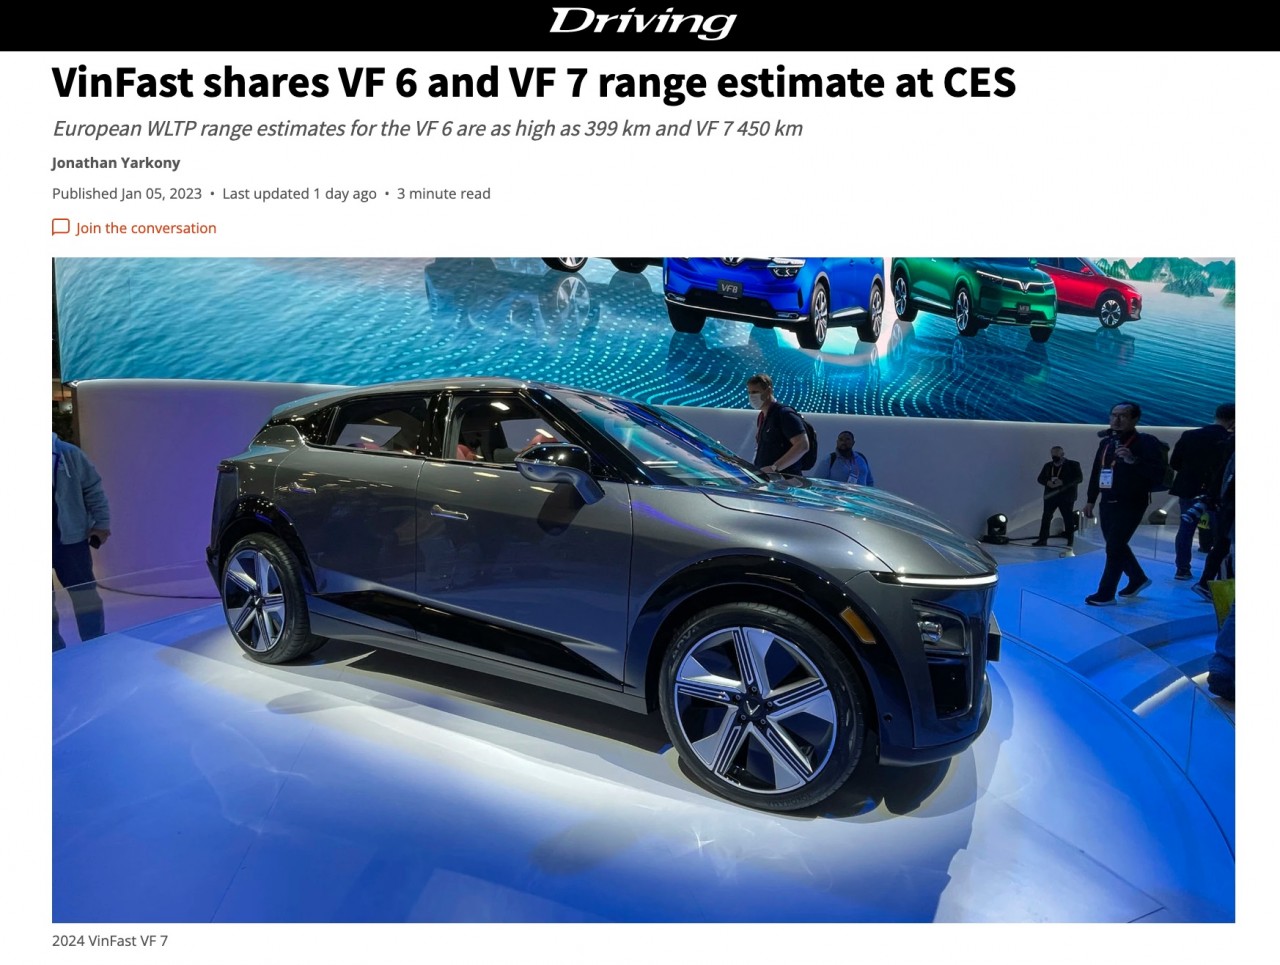 Xe điện VinFast VF6, VF7 nhận nhiều lời khen của truyền thông quốc tế tại CES 2023